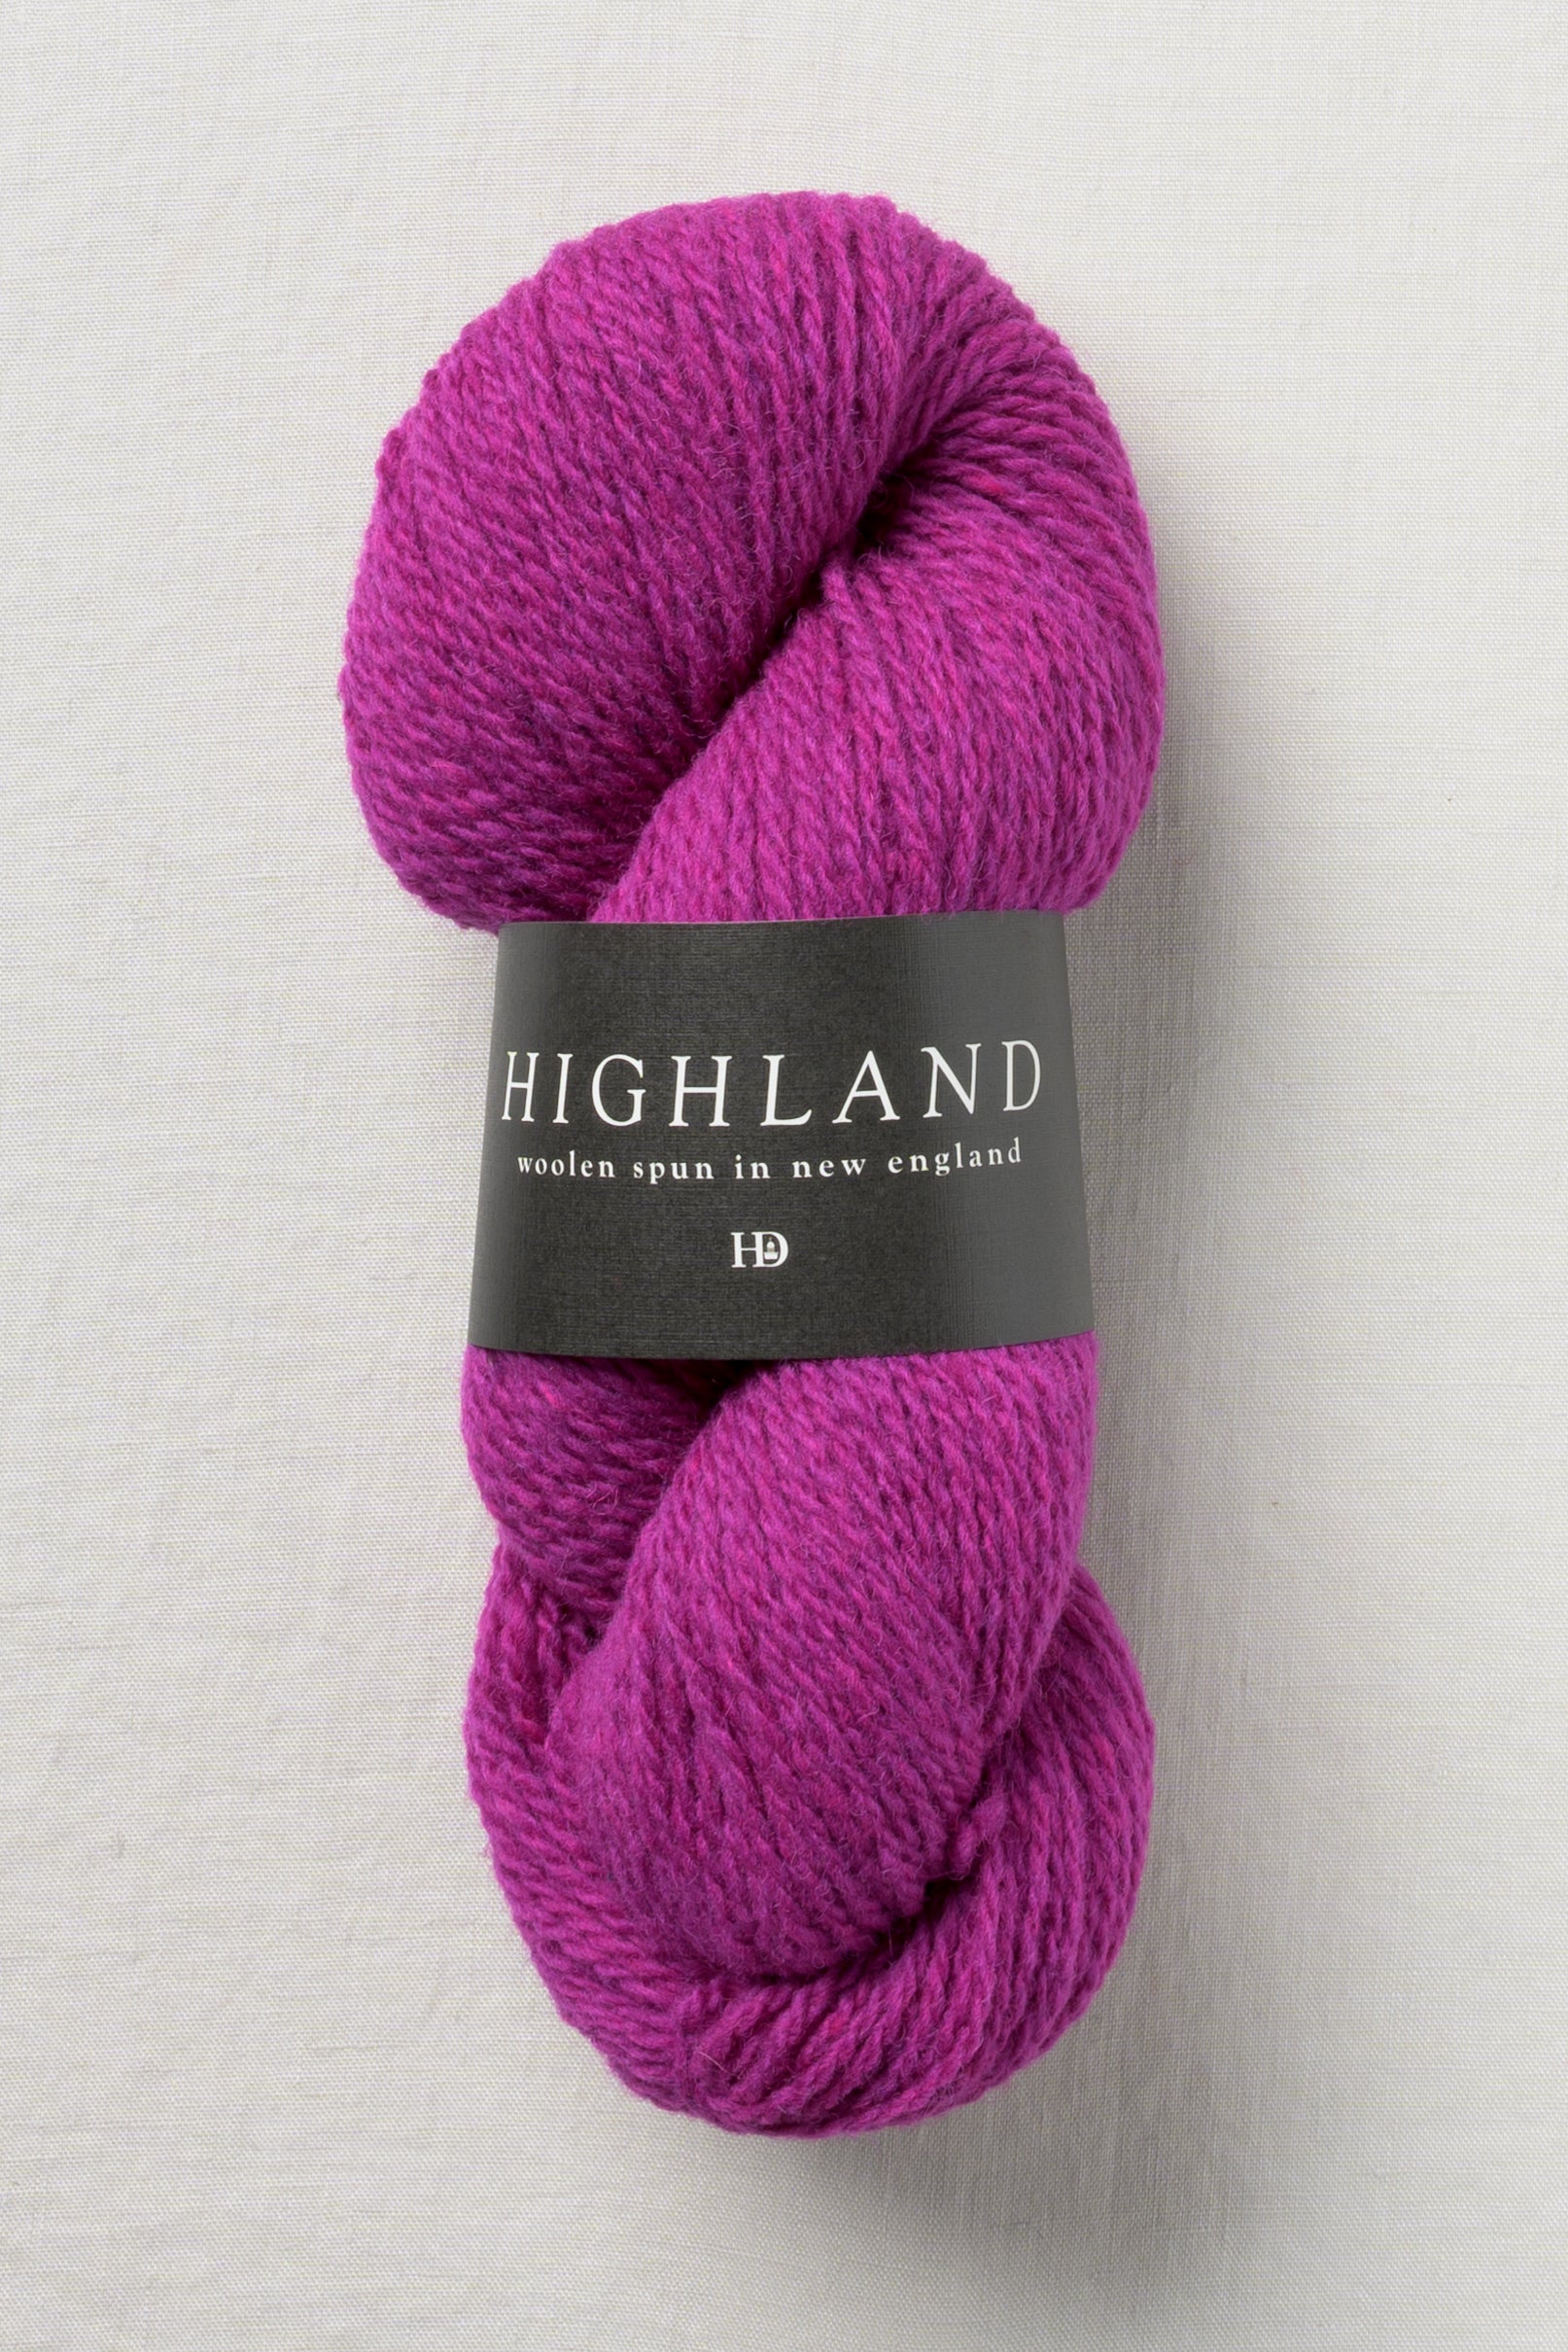 Harrisville Designs - Highland Yarn – Harrisville Designs, Inc.